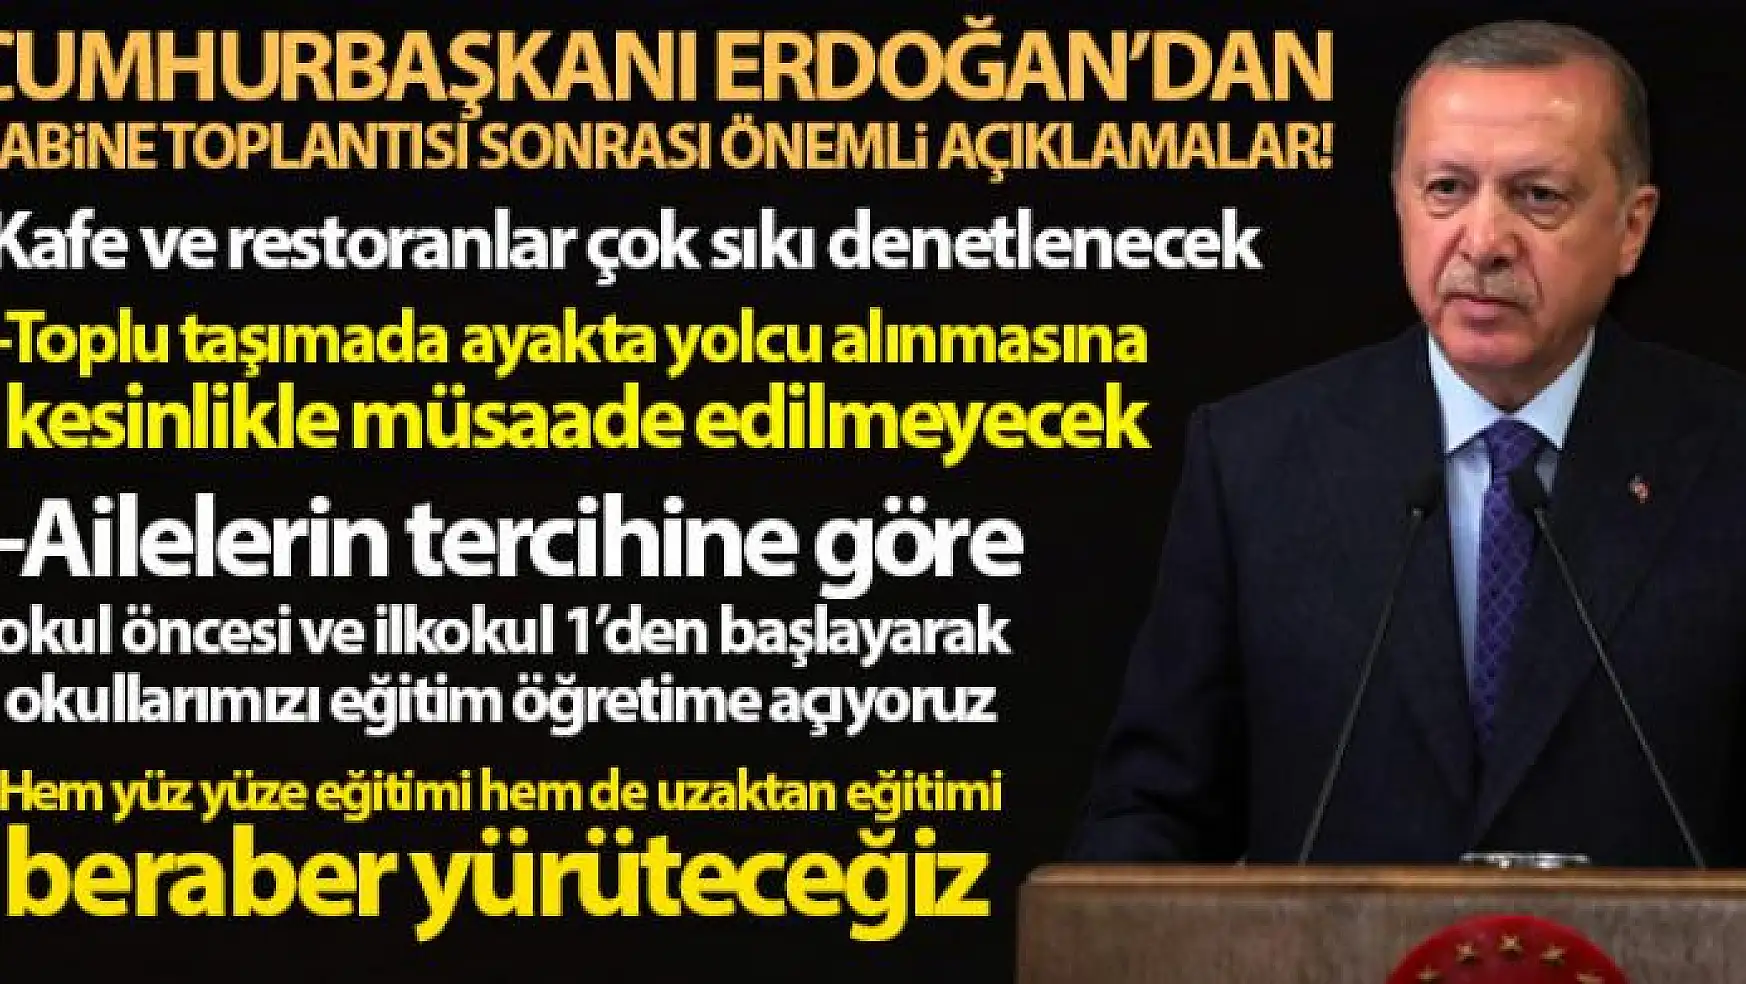 Cumhurbaşkanı Erdoğan: 'Okullarımızı eğitim-öğretime açıyoruz, yüz yüze ve uzaktan eğitim birlikte yapılacak'